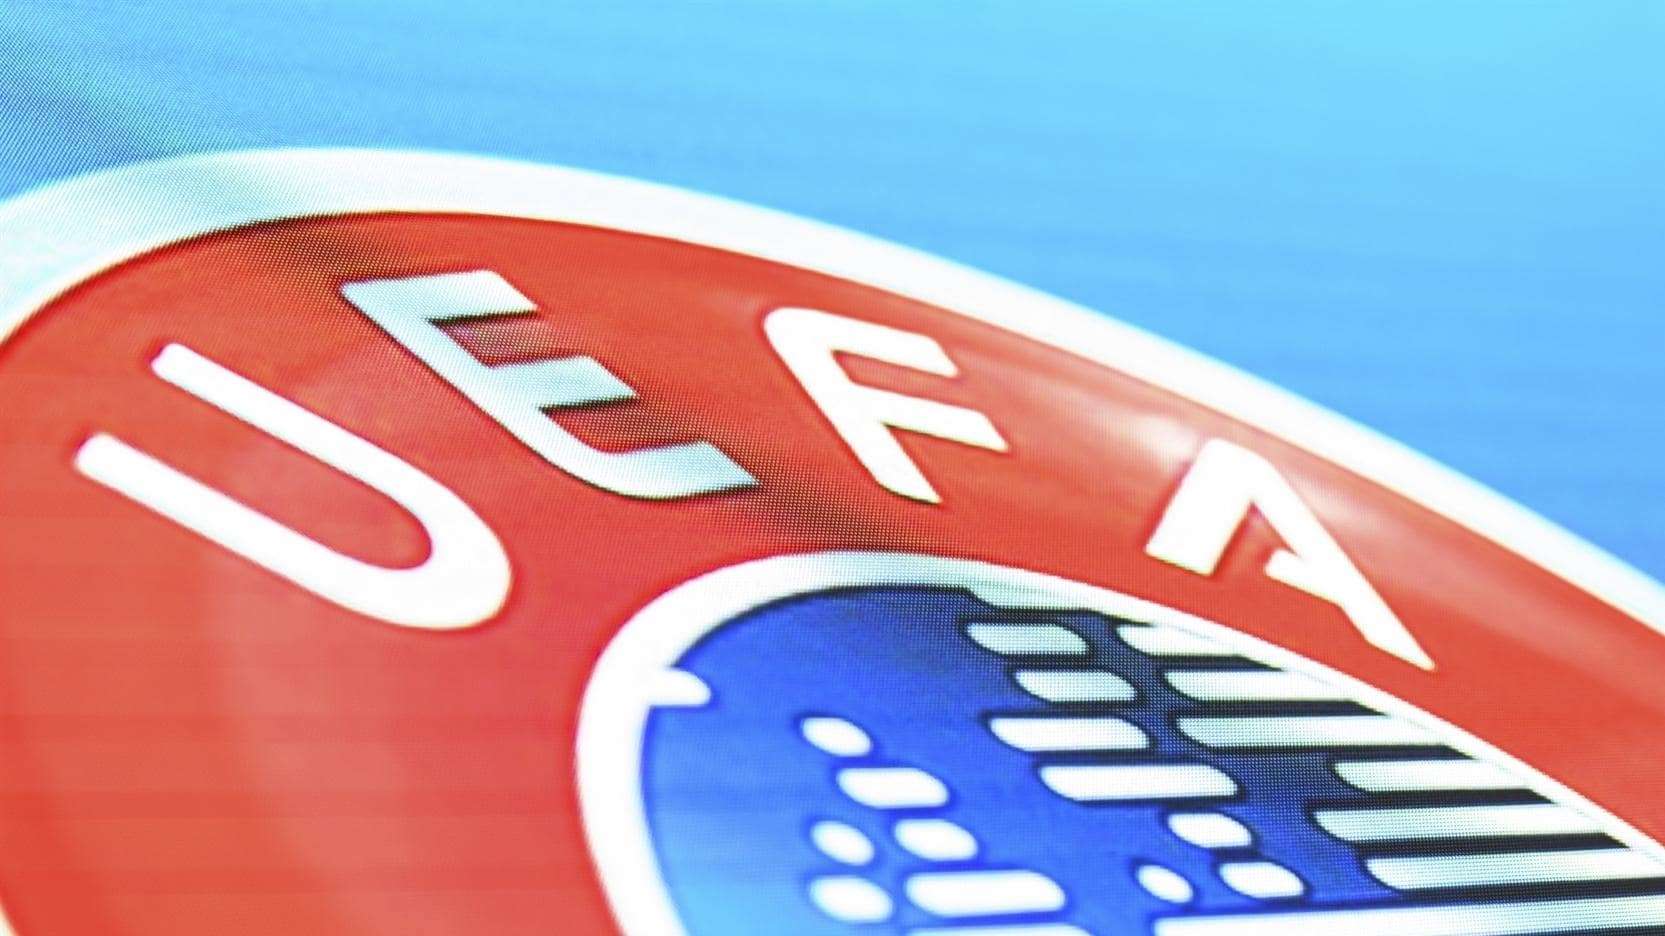 Conheça curiosidades sobre a história da UEFA